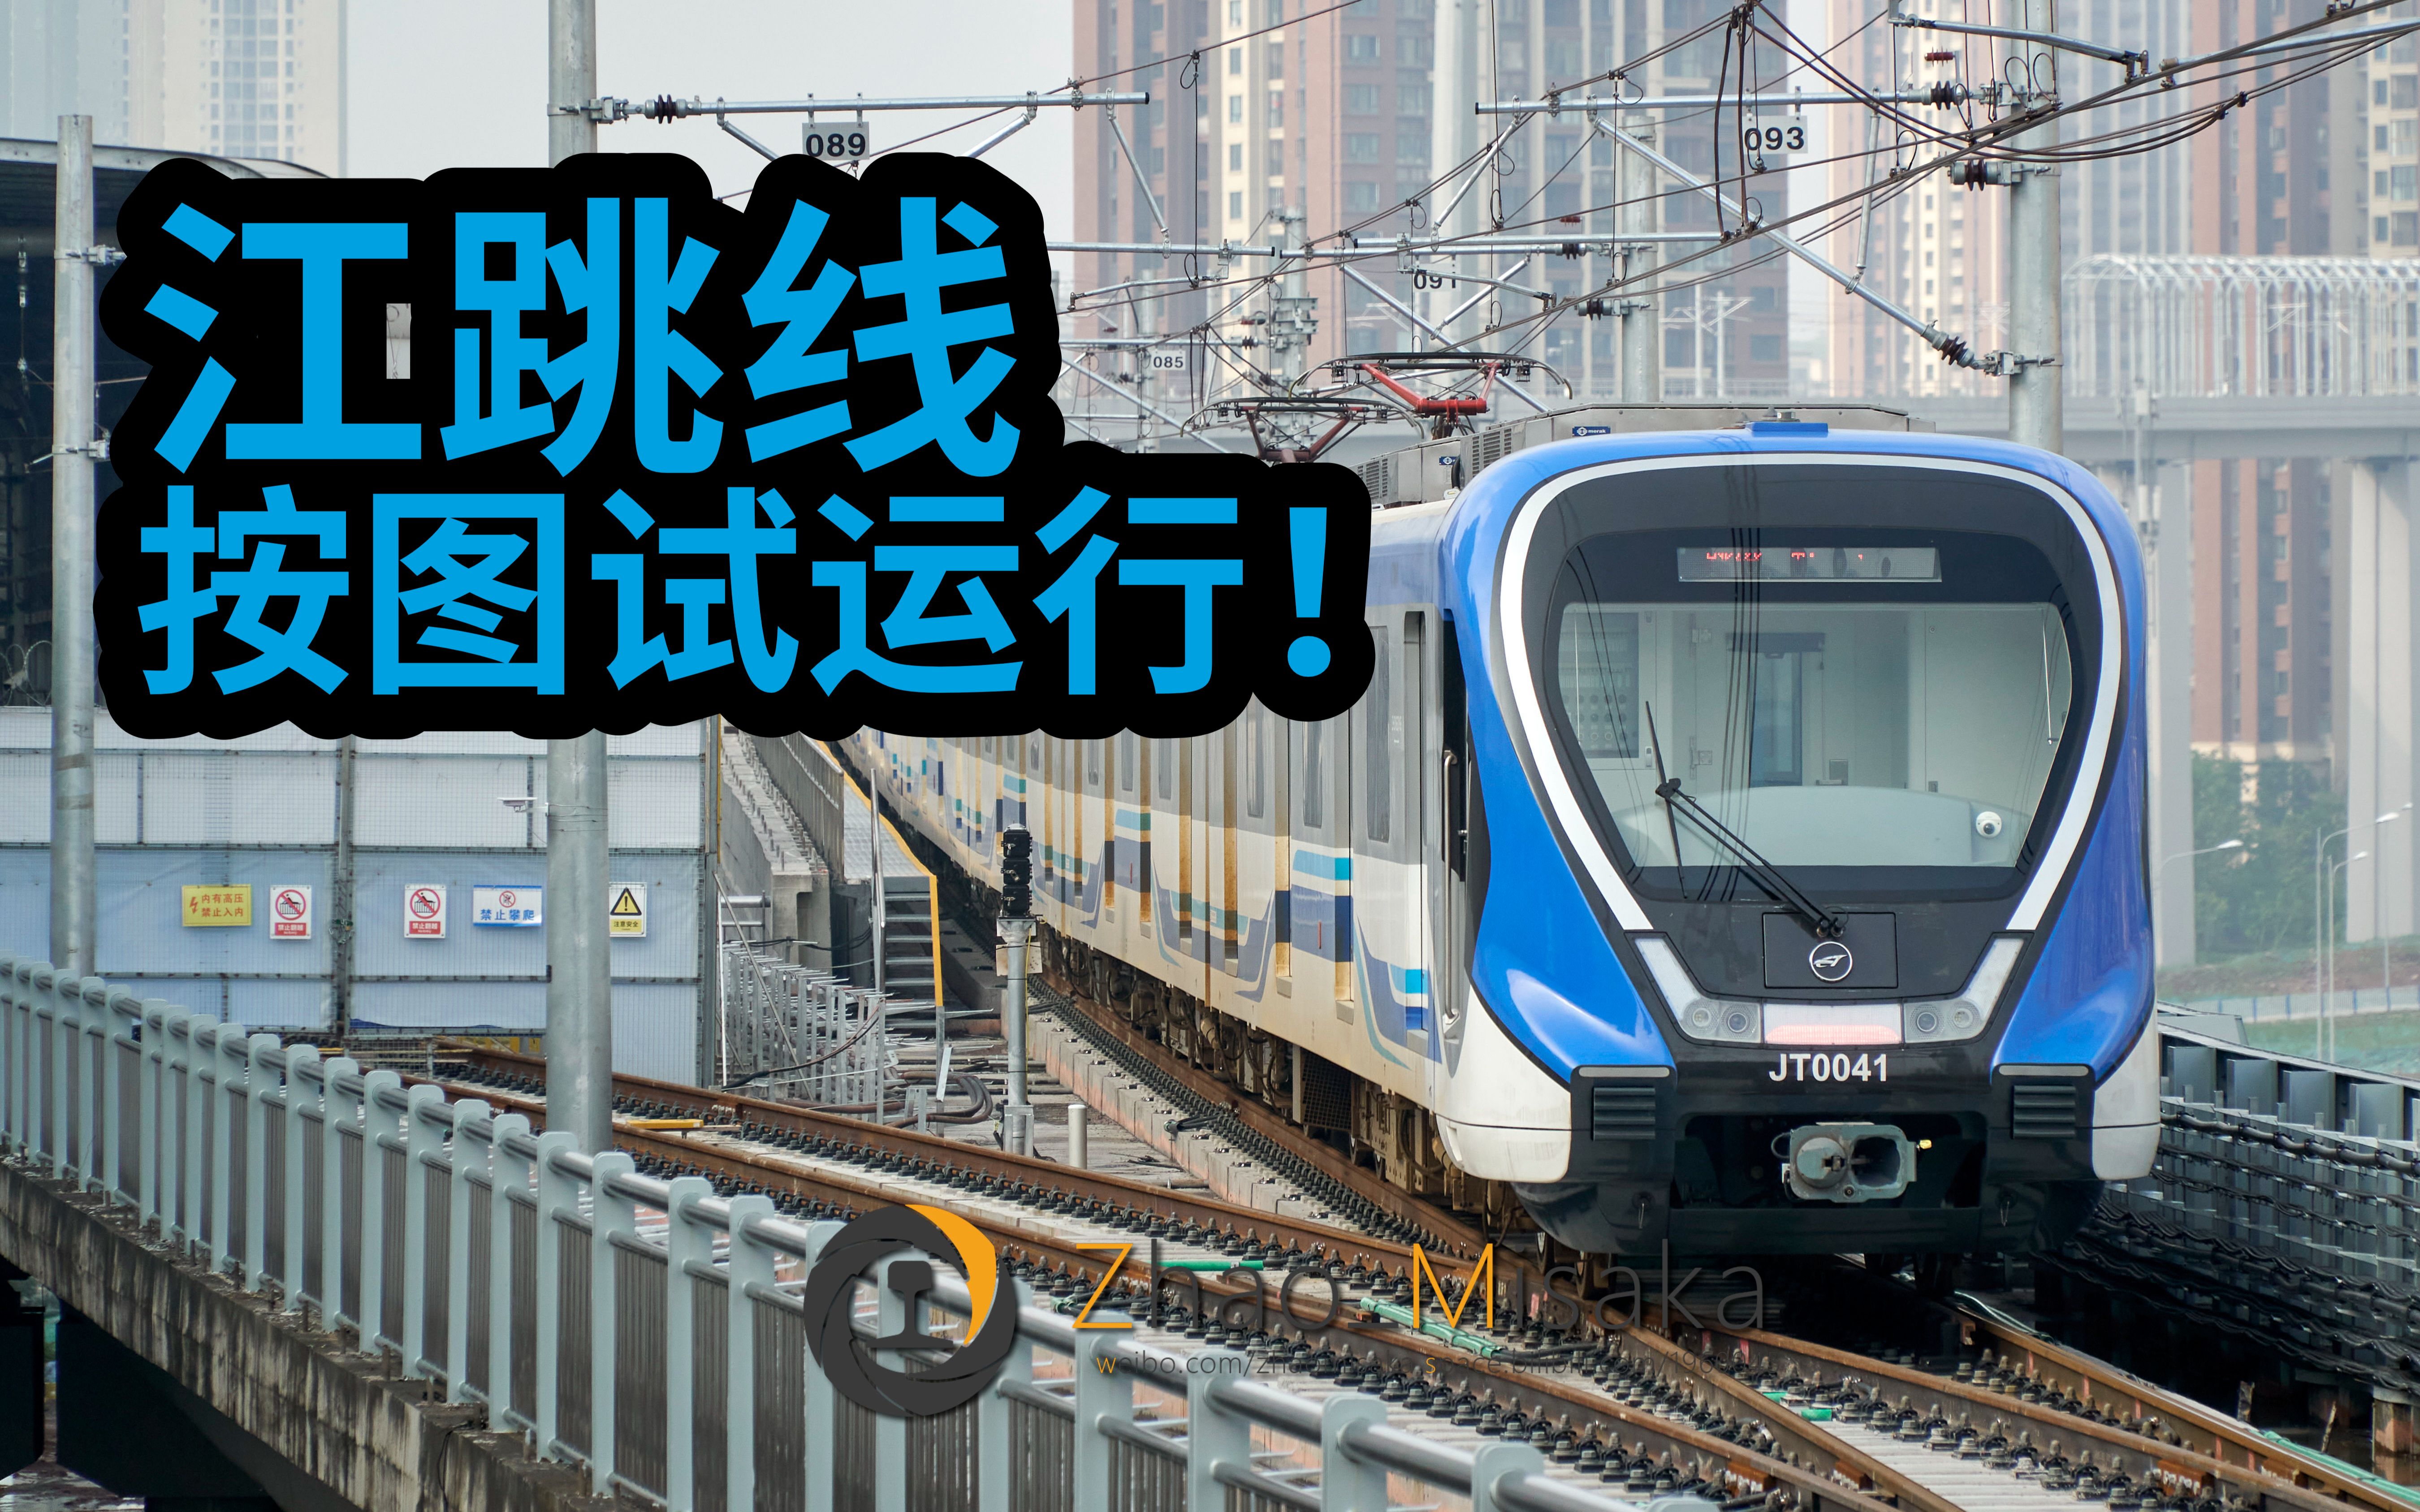 重庆铁路hdr全国第一条交直流双制式铁路江跳线开始按图试运行